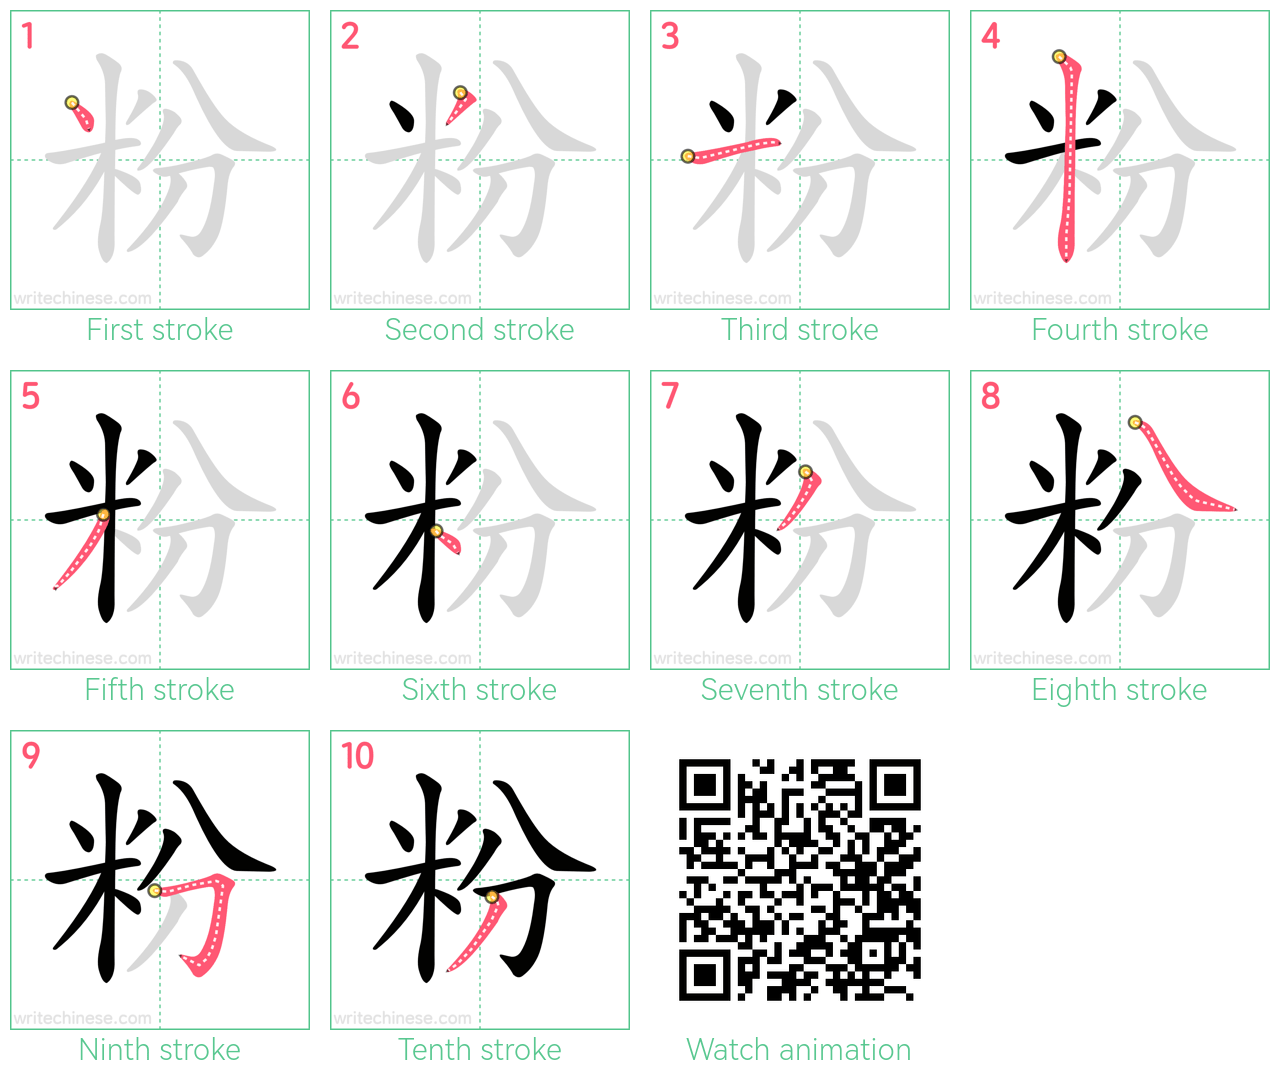 粉 step-by-step stroke order diagrams